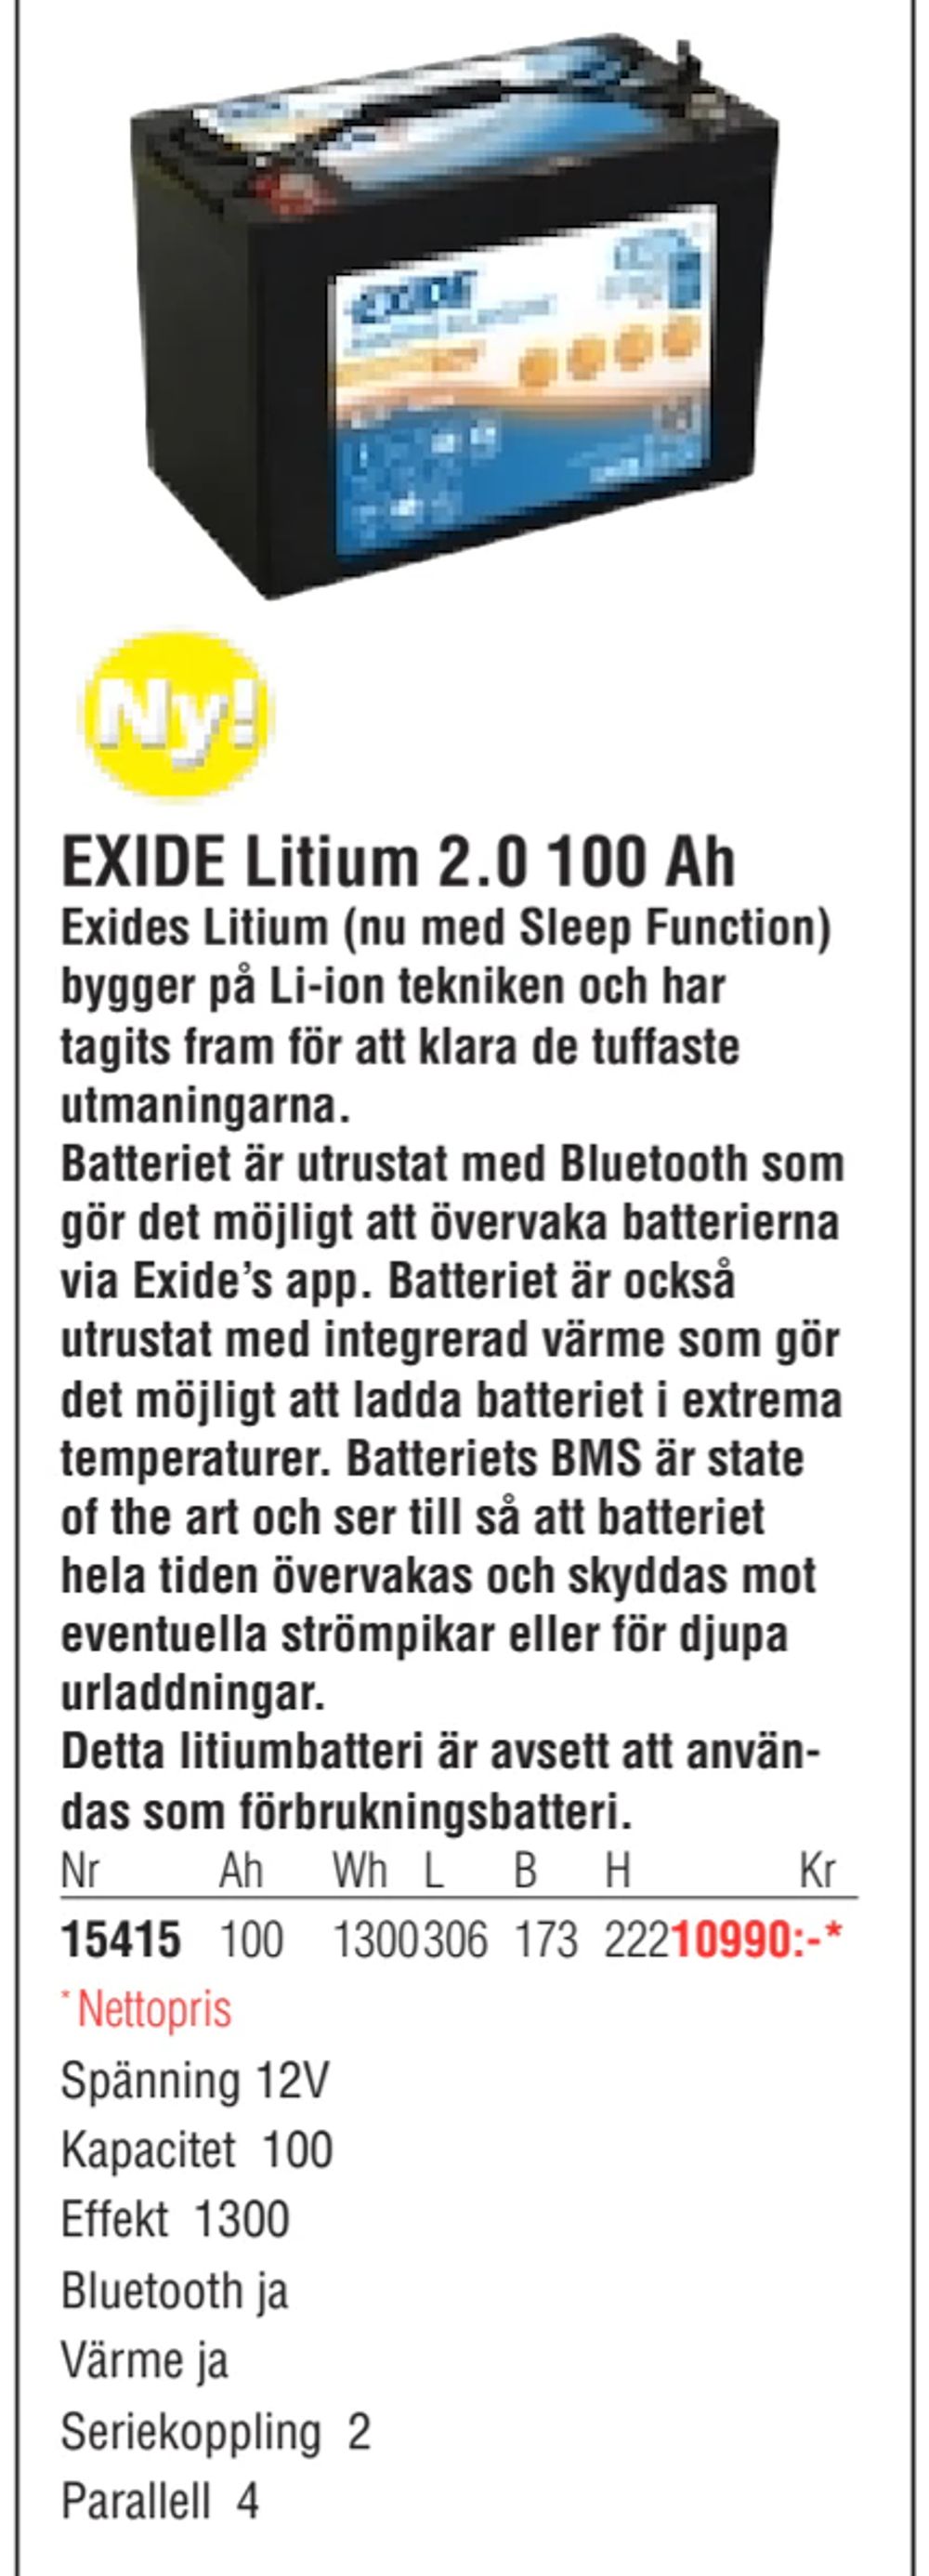 Erbjudanden på EXIDE Litium 2.0 100 Ah från Erlandsons Brygga för 10 990 kr